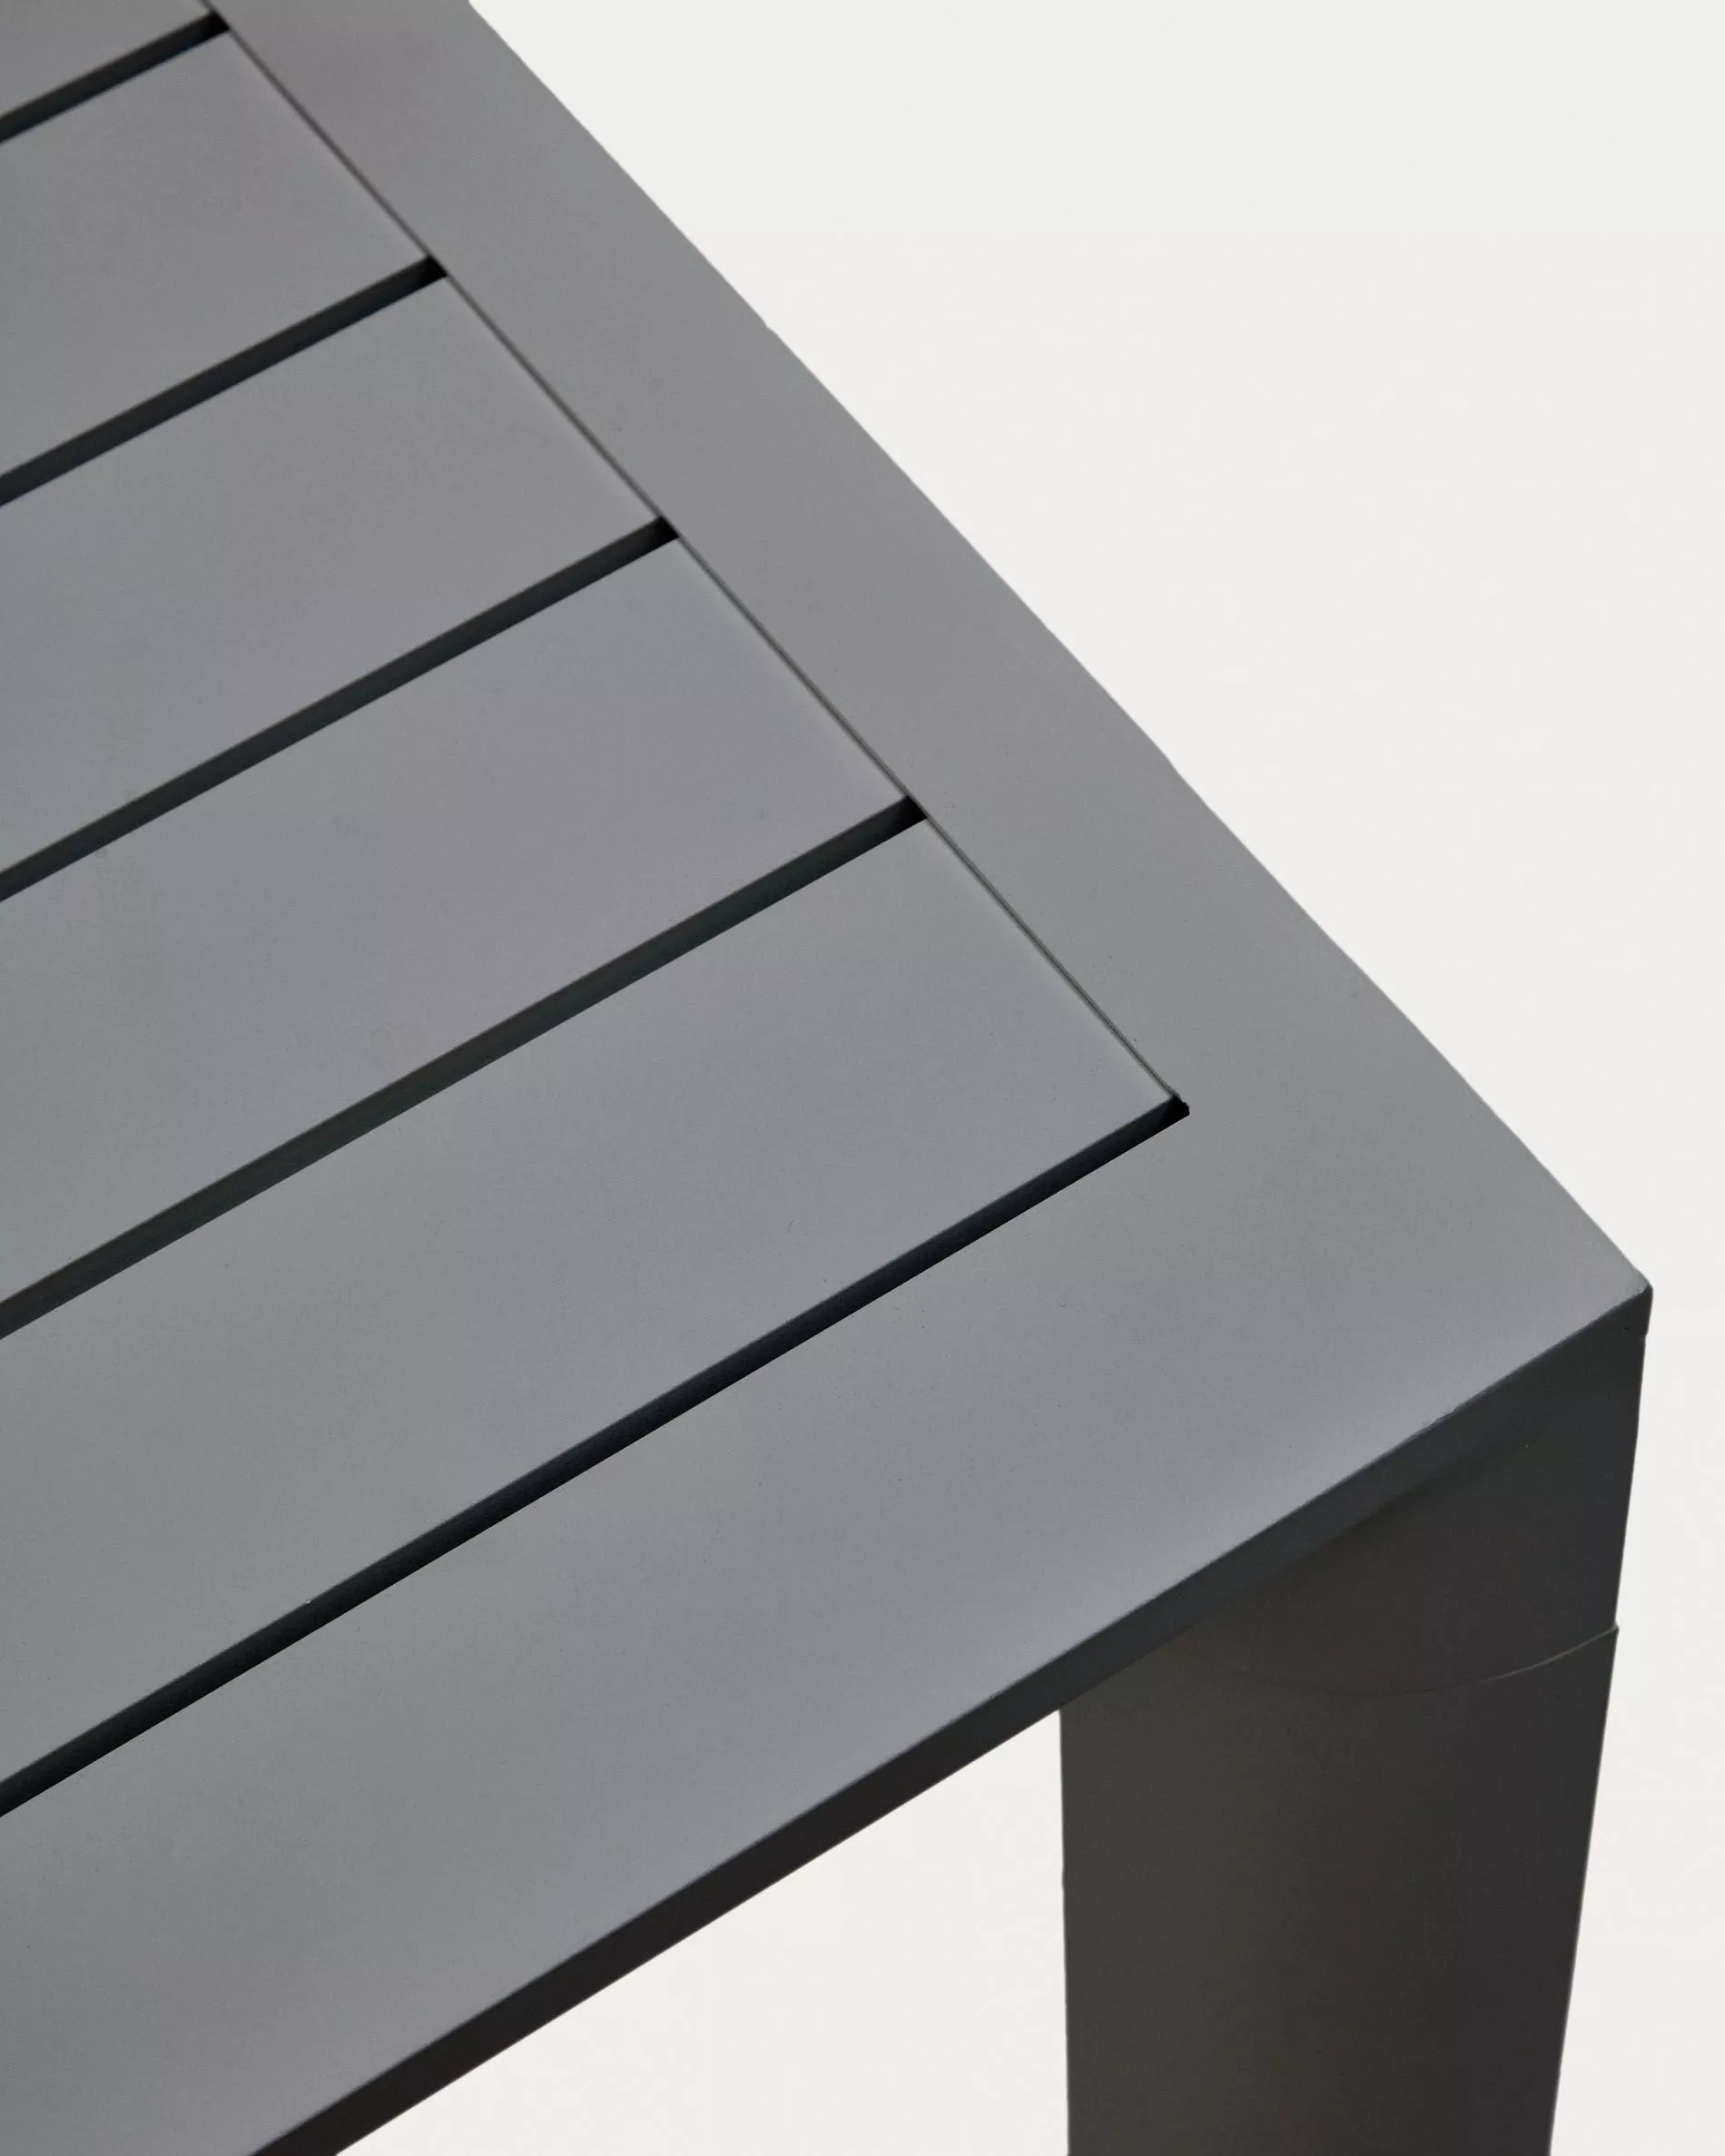 Уличный стол La Forma Culip с порошковым покрытием серого цвета 180 х 90